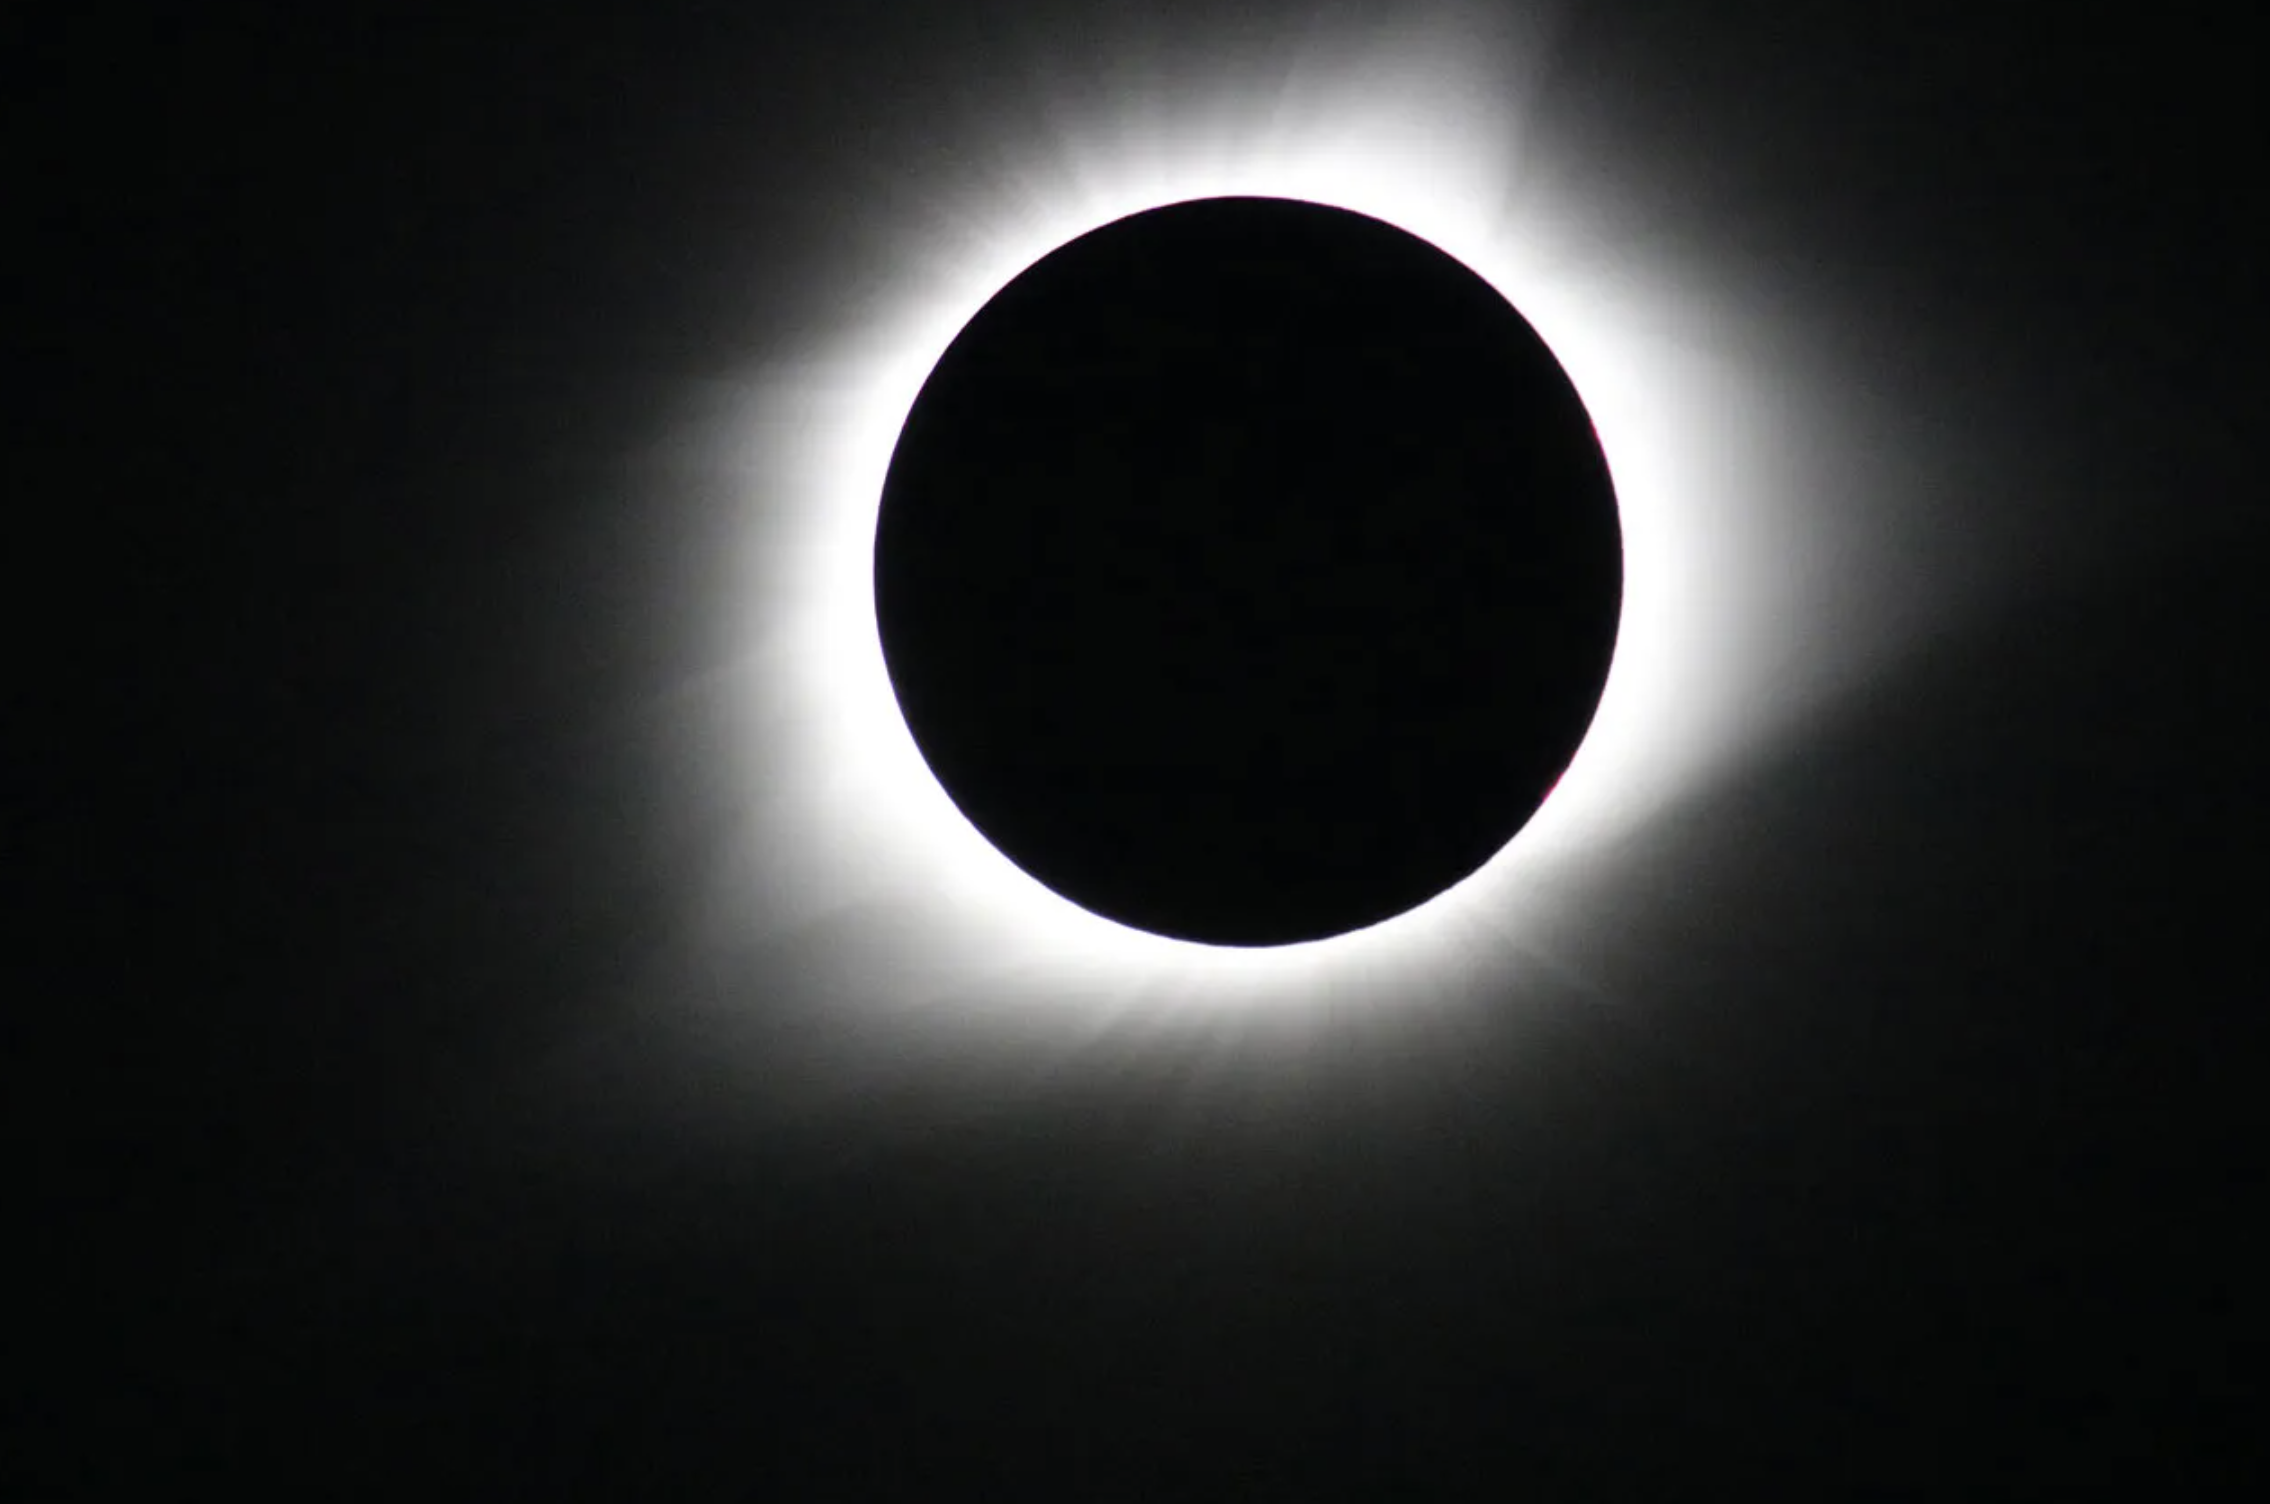 Esta imagen del eclipse solar total del 21 de agosto de 2017 fue tomada desde Madras, Oregón. El Sol aparece totalmente eclipsado por la Luna sobre un fondo negro. La corona del Sol, un halo blanco brillante, rodea el contorno de la Luna, un círculo negro en el centro de la imagen.